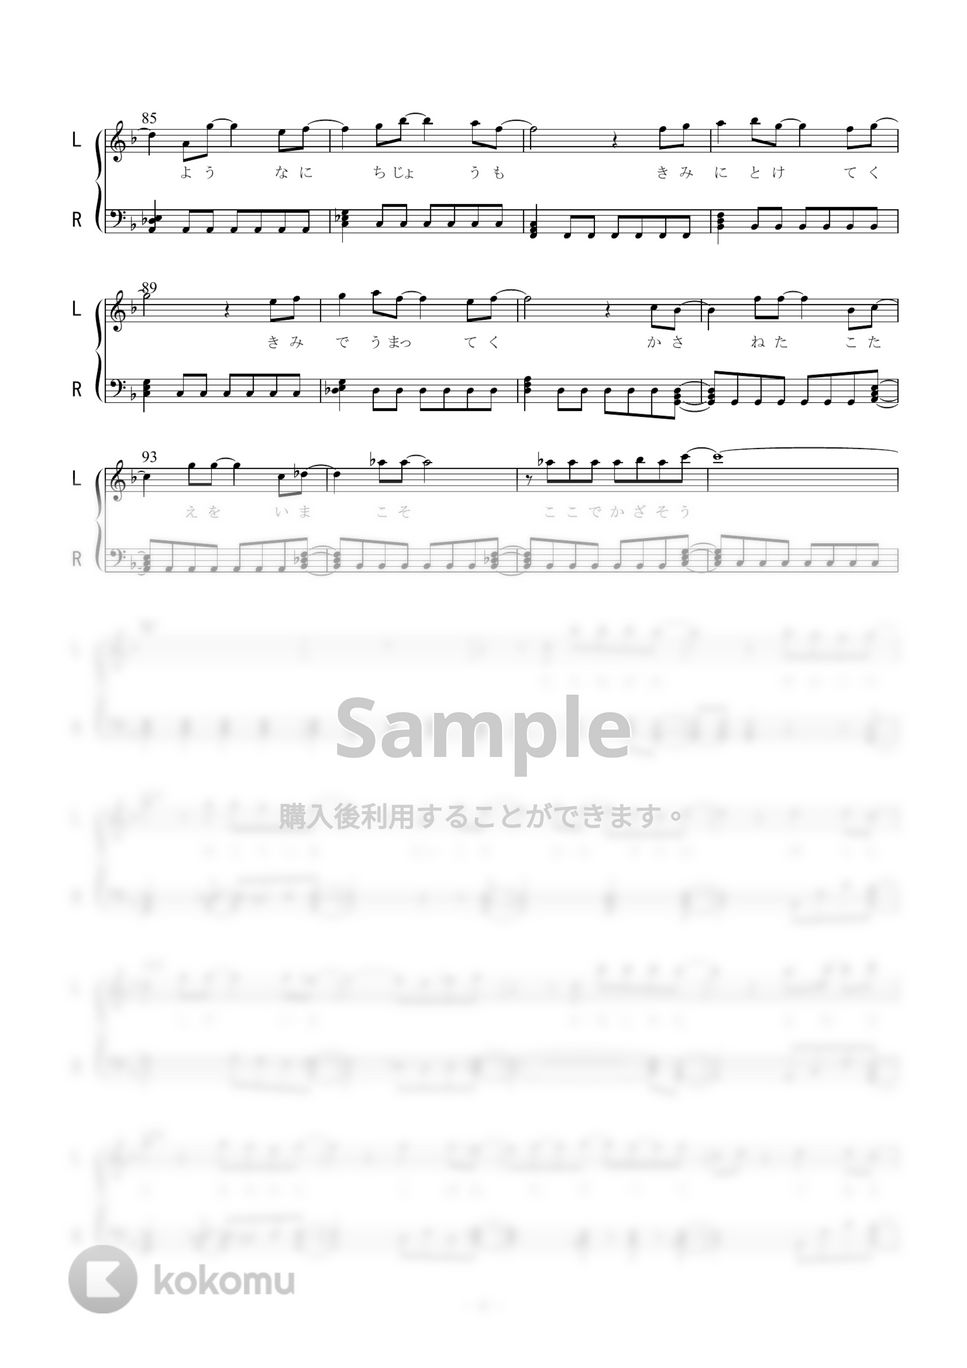 オーイシマサヨシ - インパーフェクト (ピアノソロ) 楽譜 by 二次元楽譜製作所